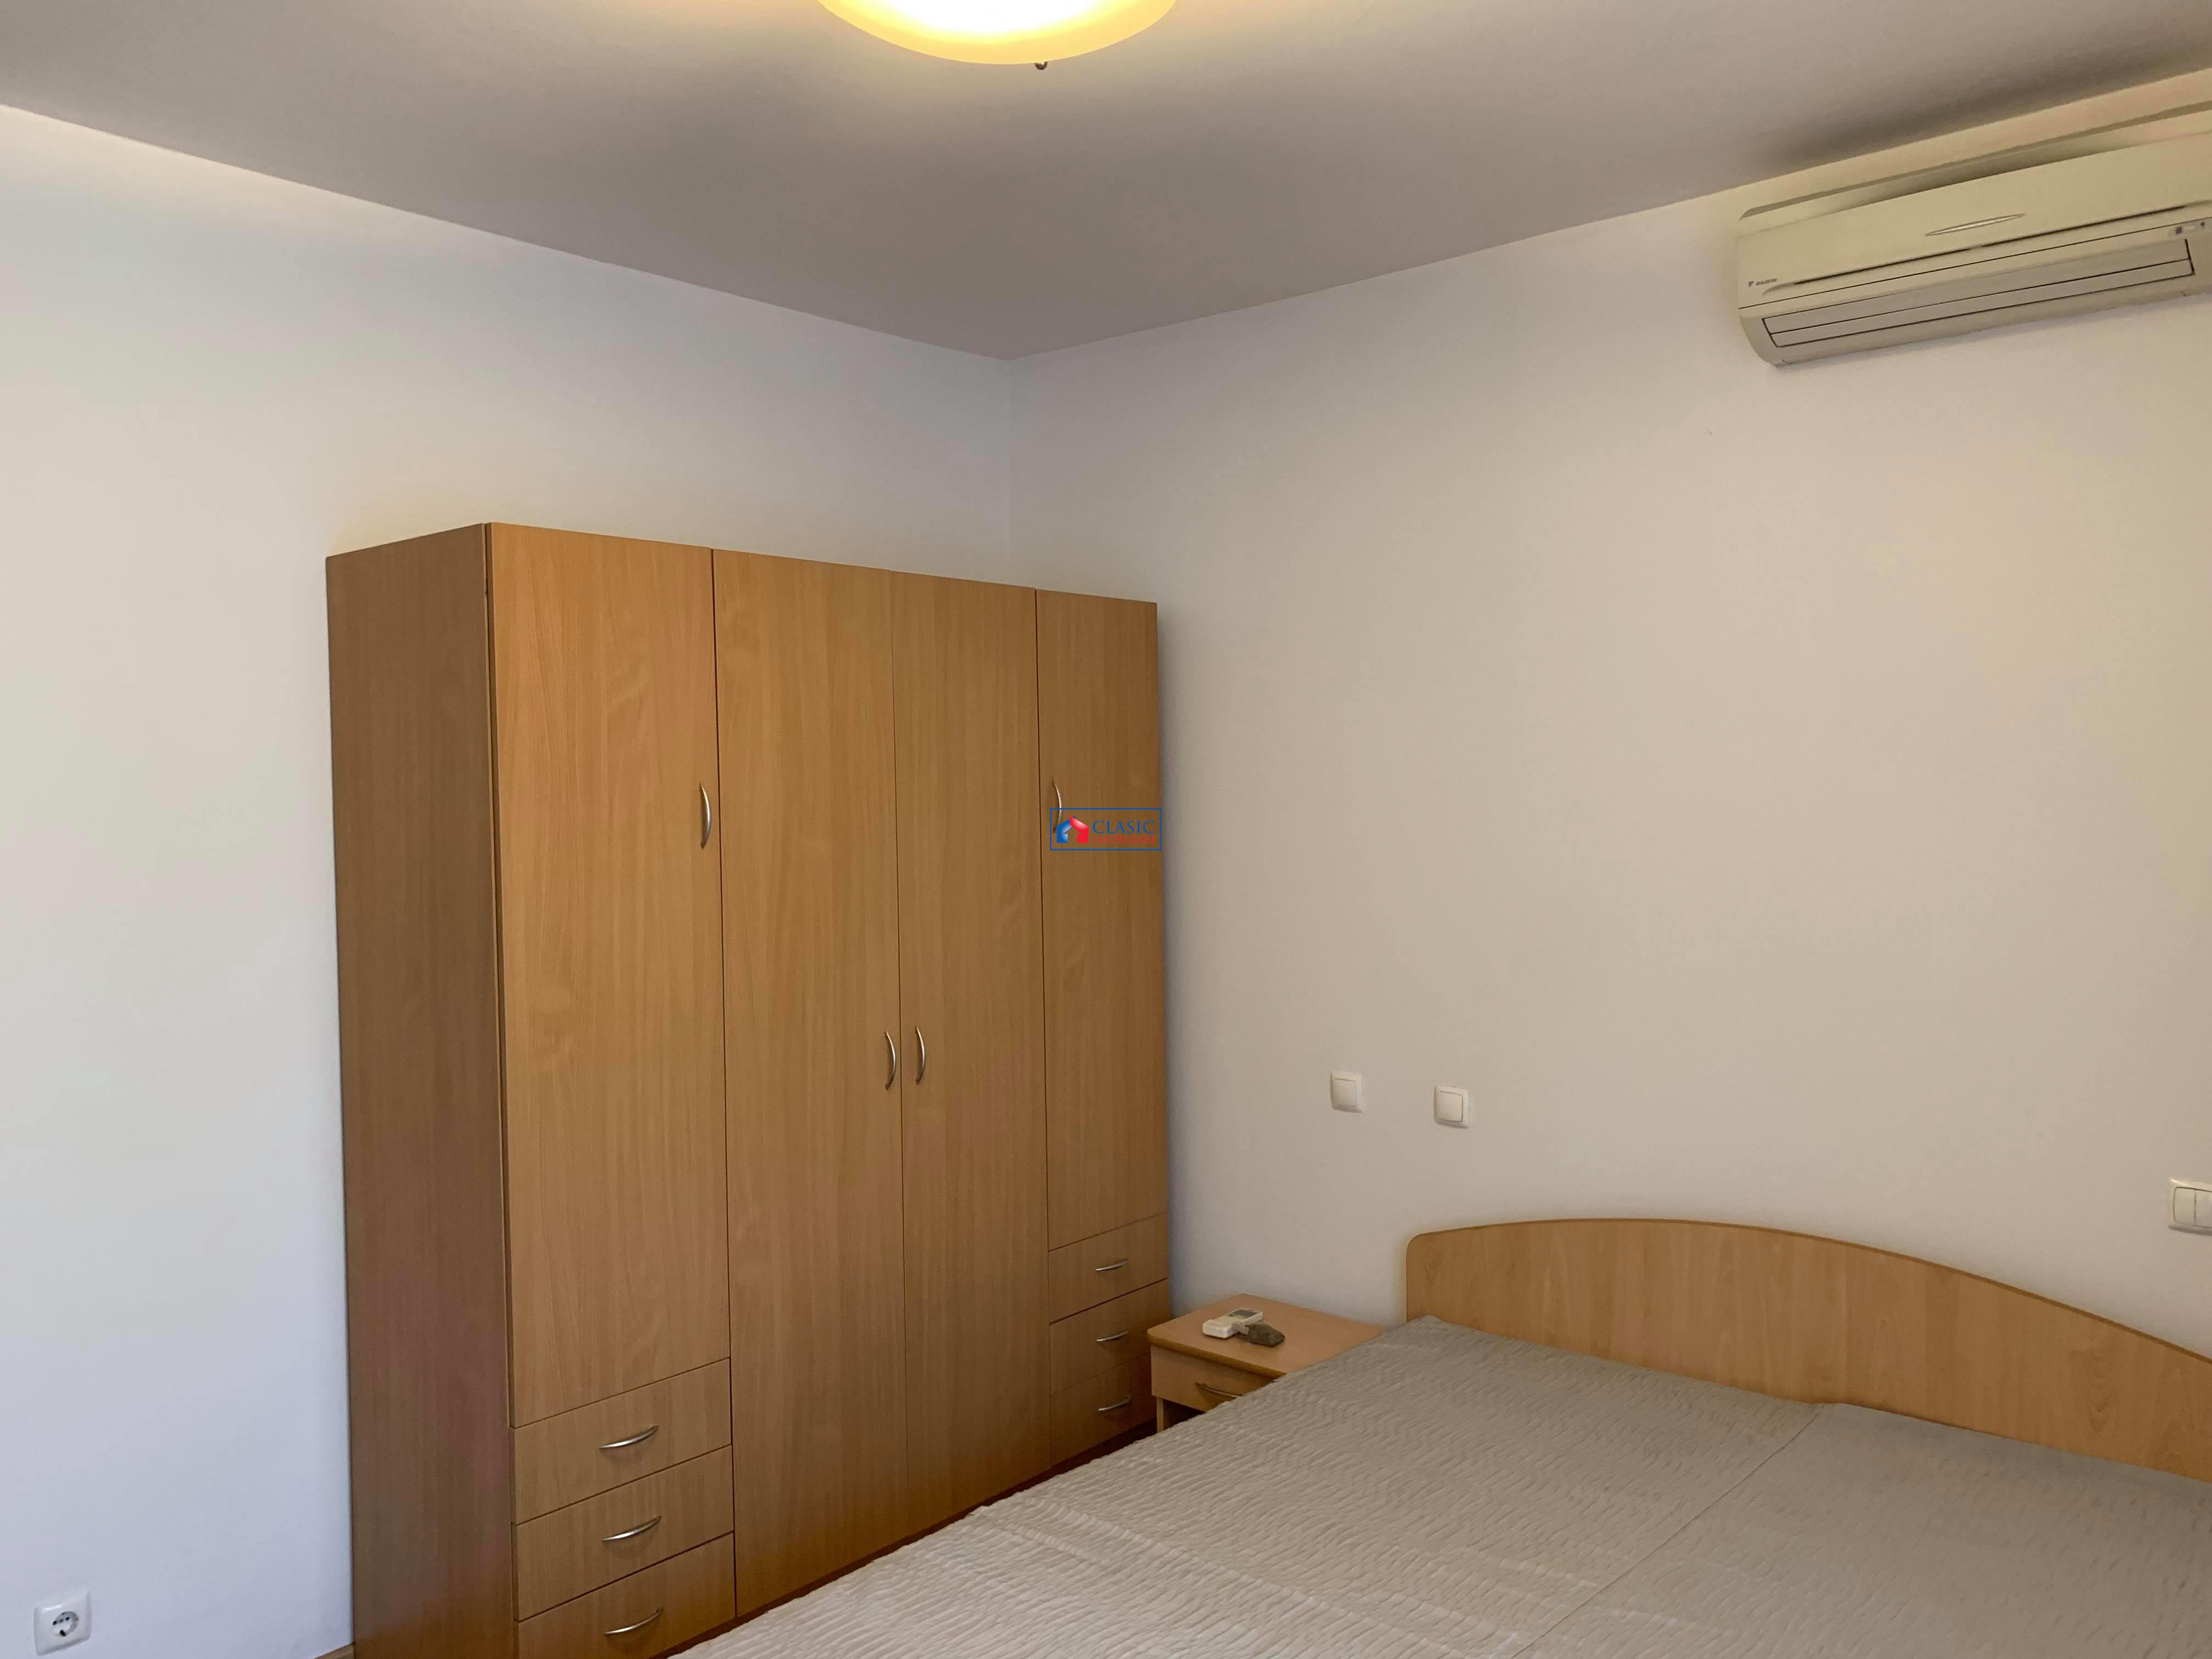 Inchiriere apartament 3 camere bloc nou in Gheorgheni  Interservisan, Cluj Napoca